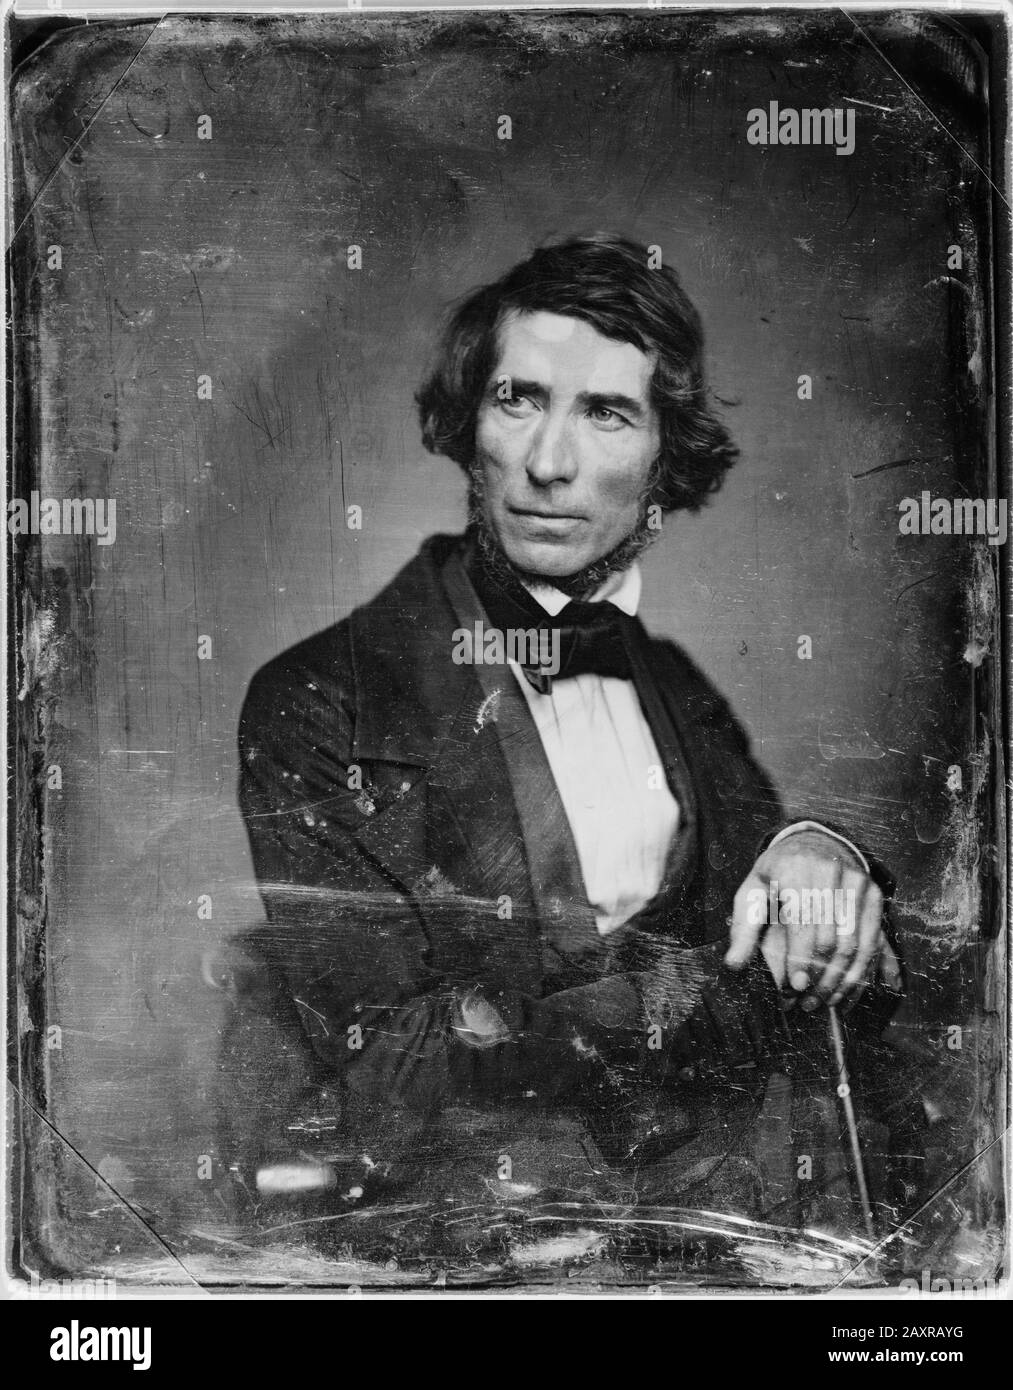 1850 ca , USA : The american painter  Asher Brown DURAND ( 1796 - 1886 ) . Photo by Mathew B. Brady ( 1823 - 1896 ) .- ARTS - ARTI VISIVE - ARTE - Francia - PORTRAIT - RITRATTO - HISTORY - FOTO STORICHE - collar - colletto - tie bow - fiocco - cravatta - beard - barba  --- Archivio GBB Stock Photo